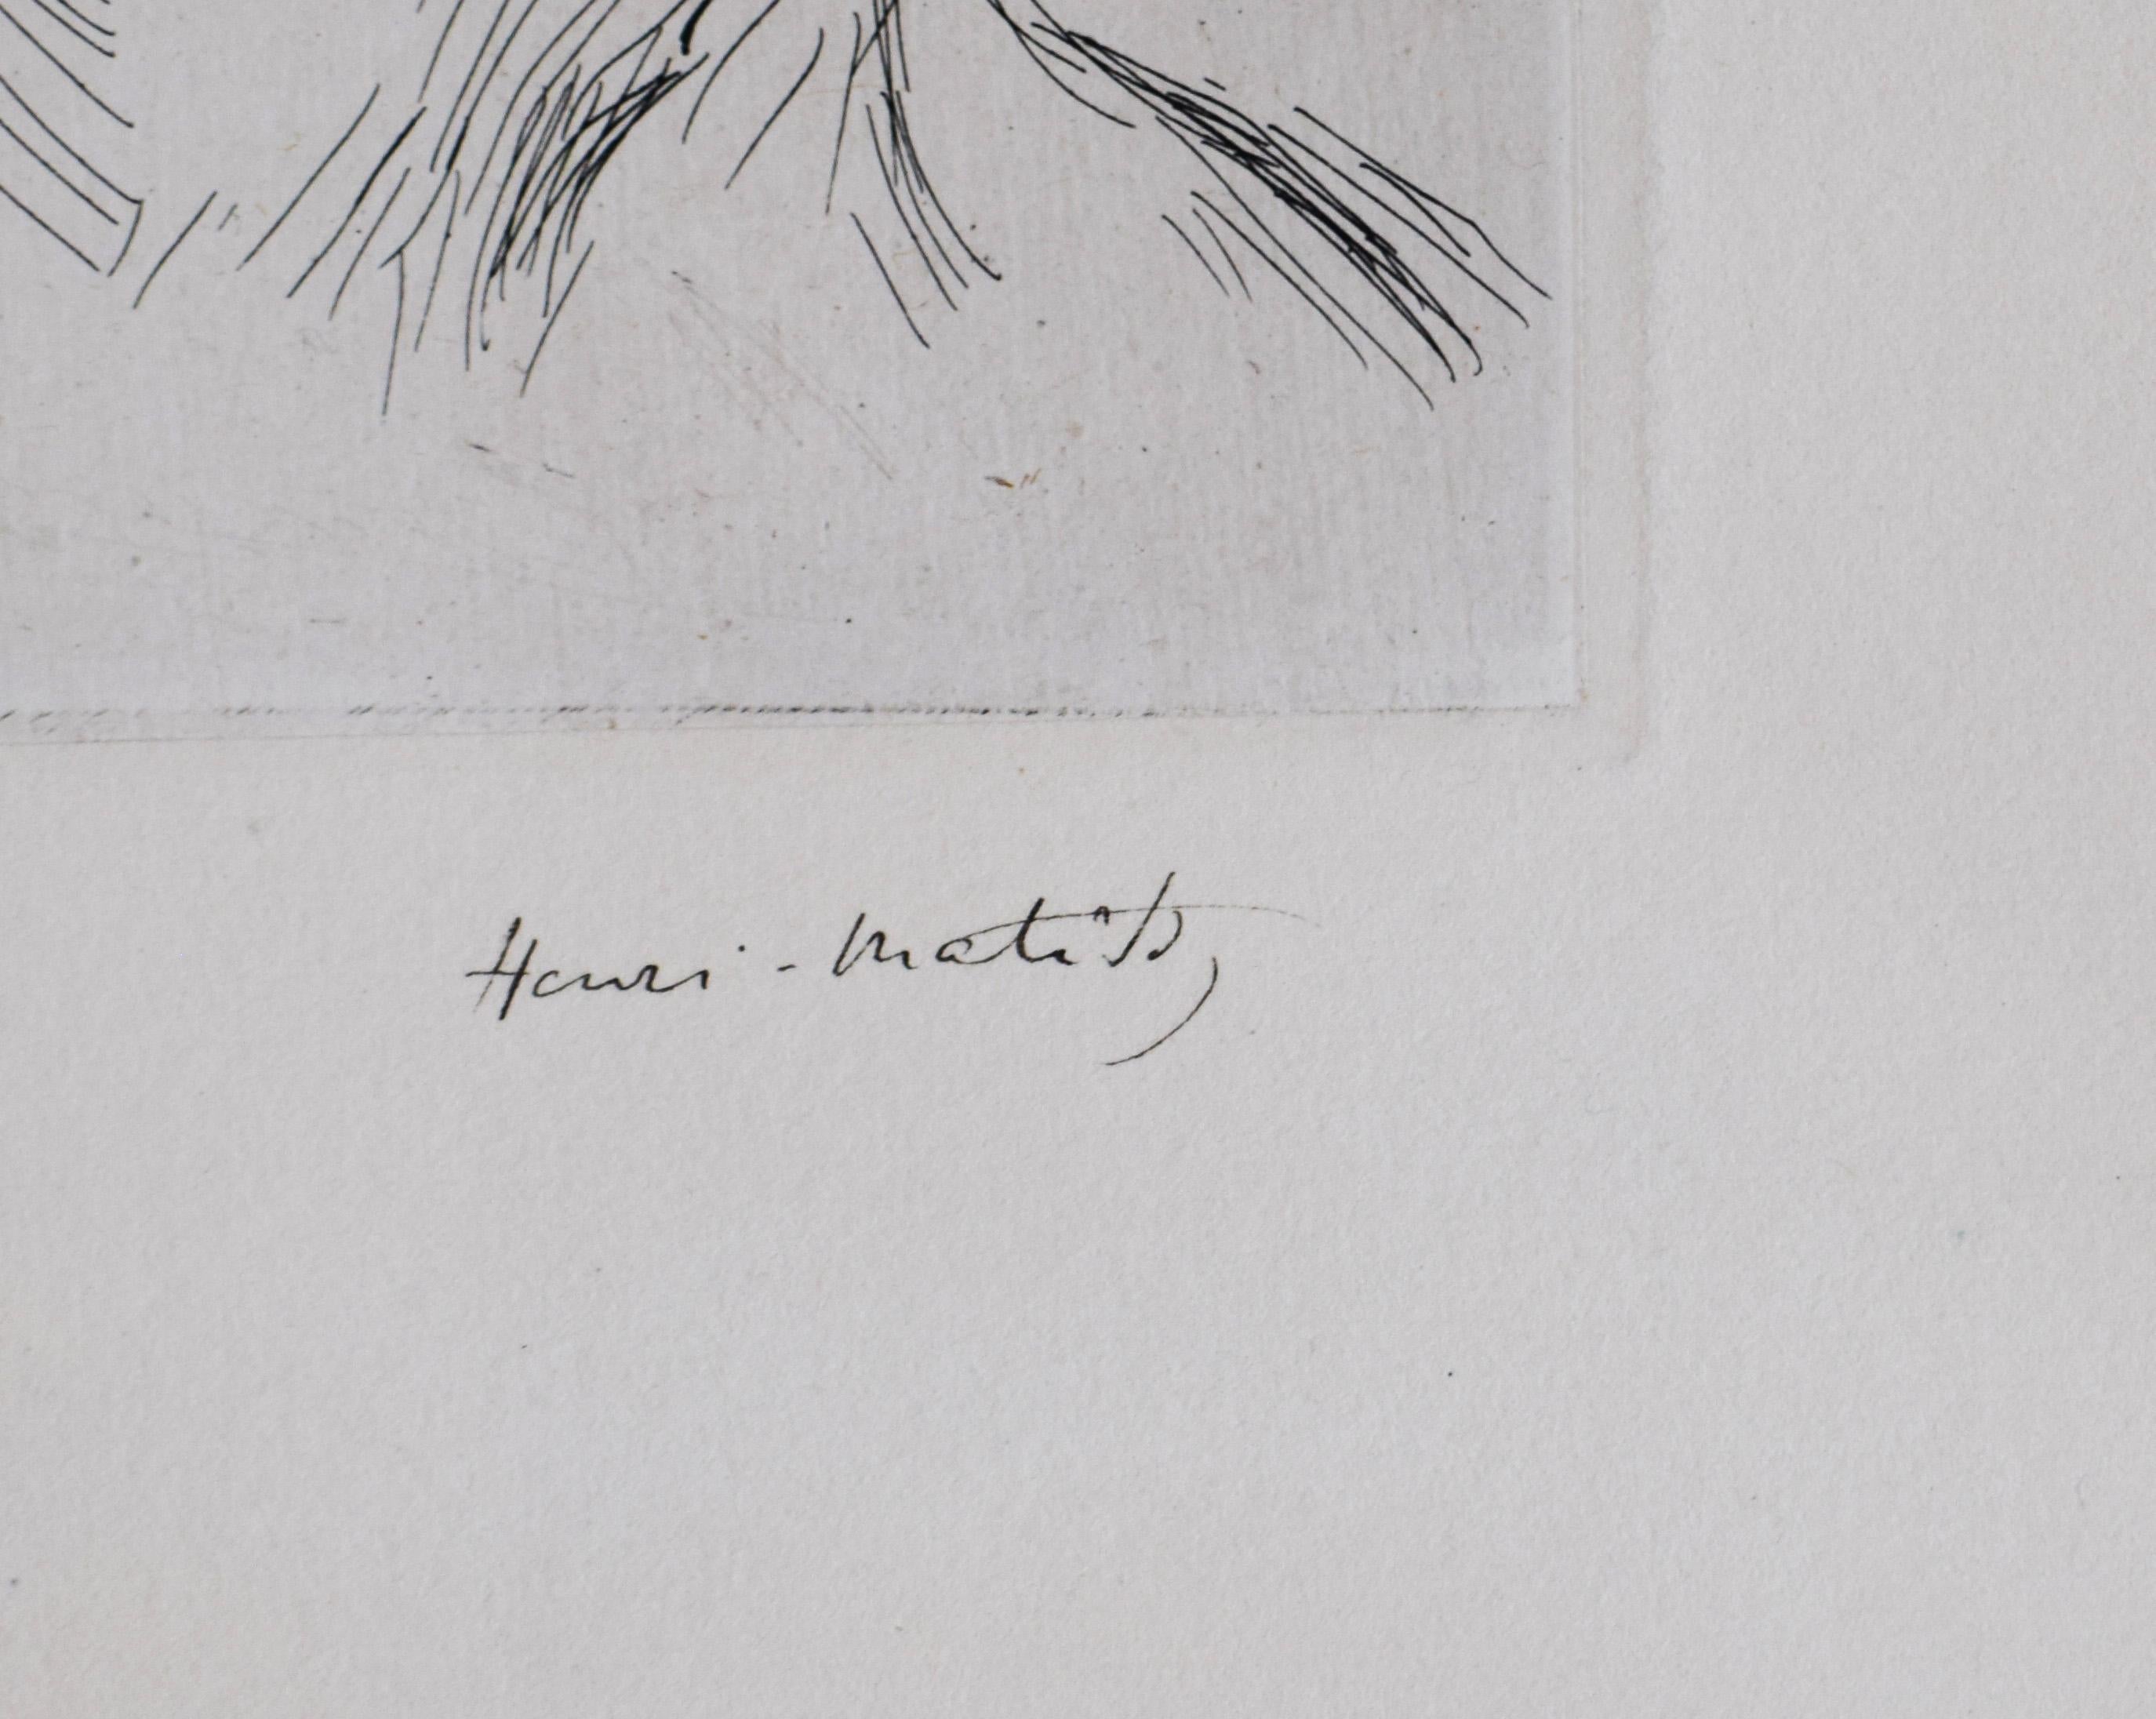 Frontispiece, von: Fifty Drawings - Französisches Impressionismus-Porträt (Grau), Portrait Print, von Henri Matisse